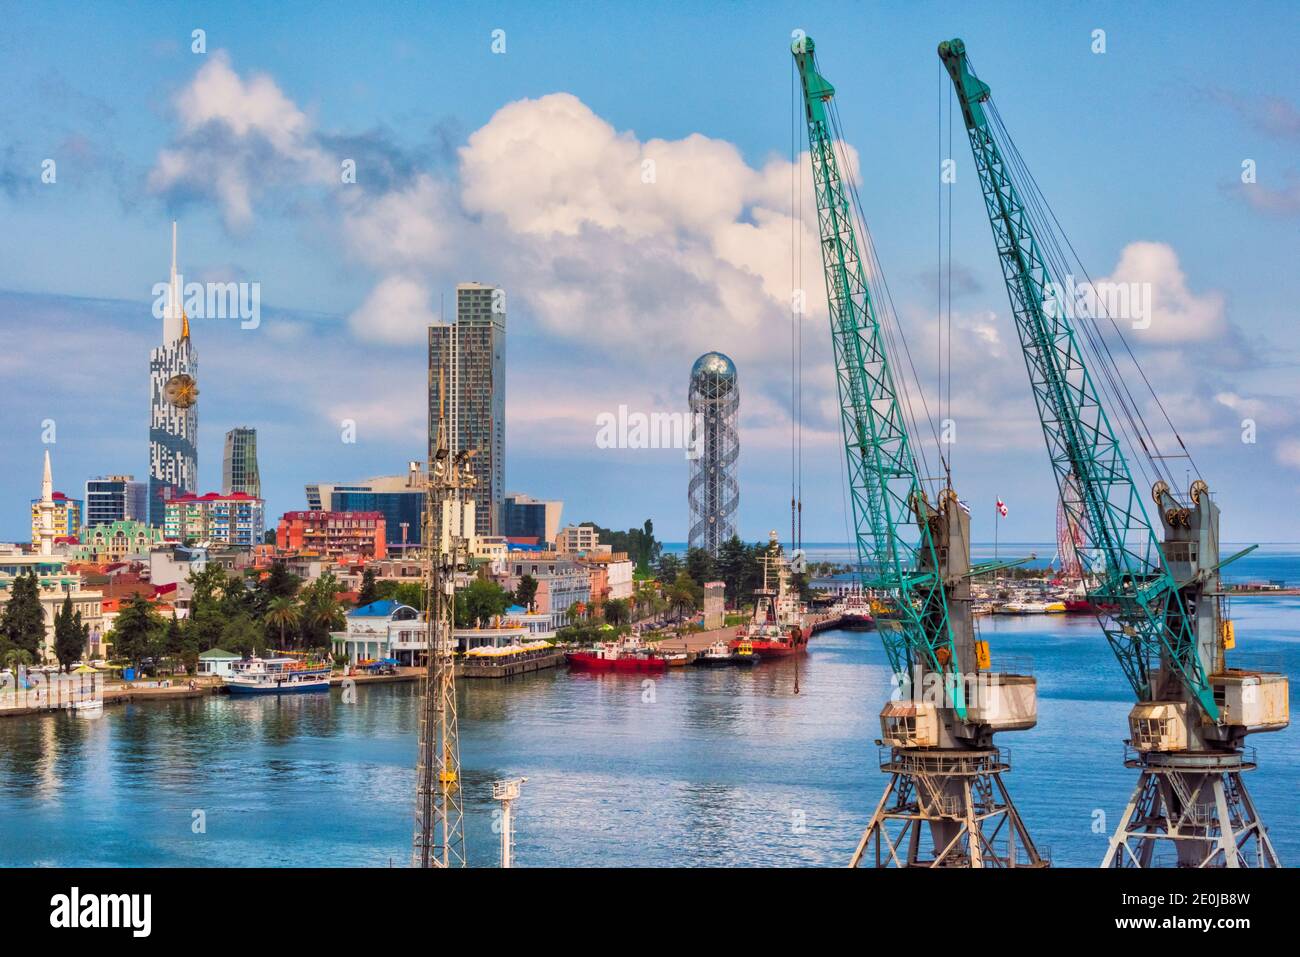 Stadtbild entlang der Küste des Kaspischen Meeres, Batumi Technological University Tower mit einem Riesenrad in die Fassade eingebaut, Porta Batumi Tower und Stockfoto